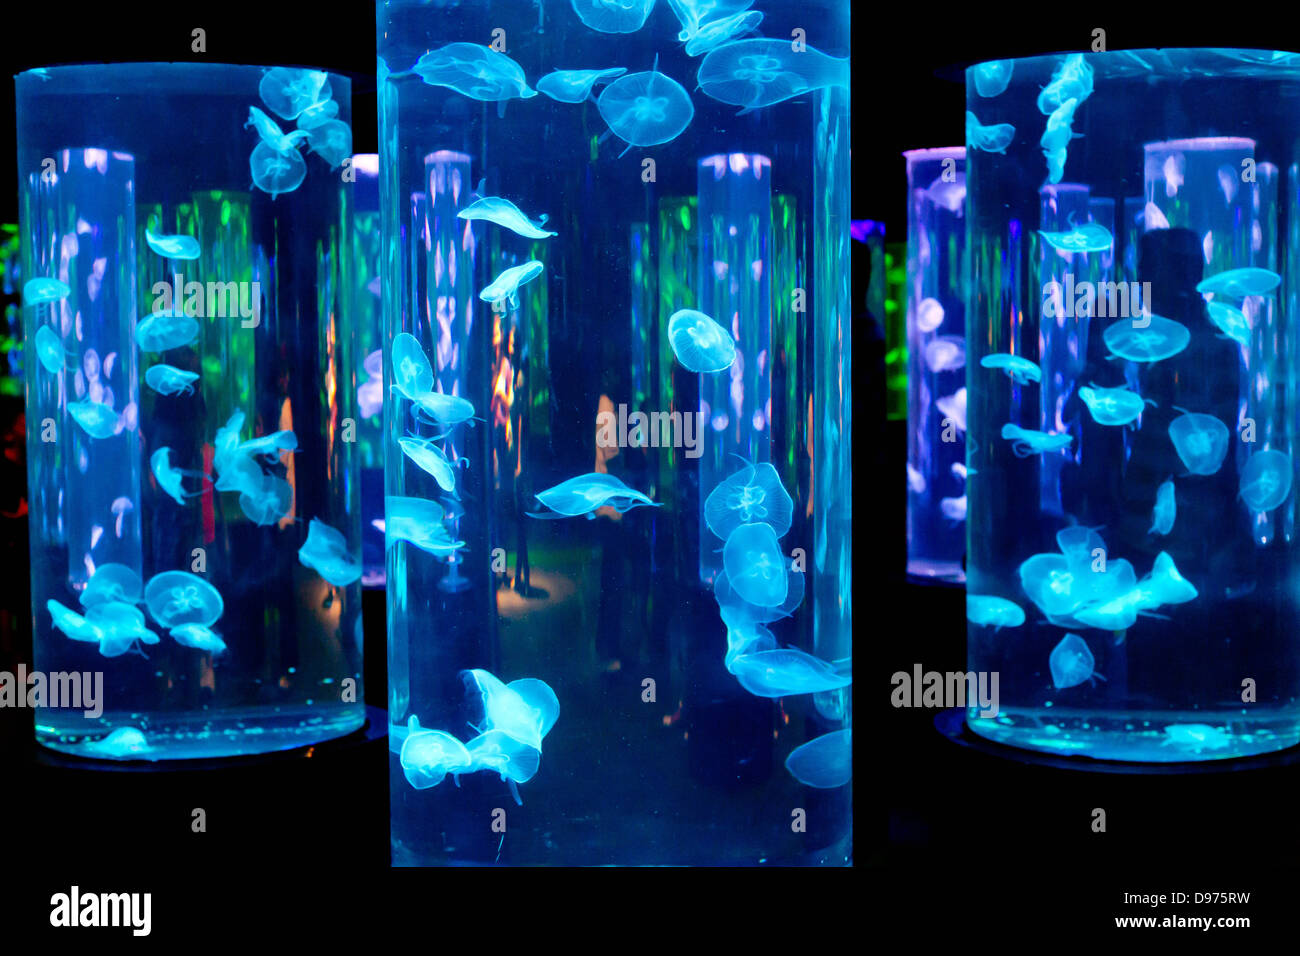 jellyfish lamp aquarium instructions